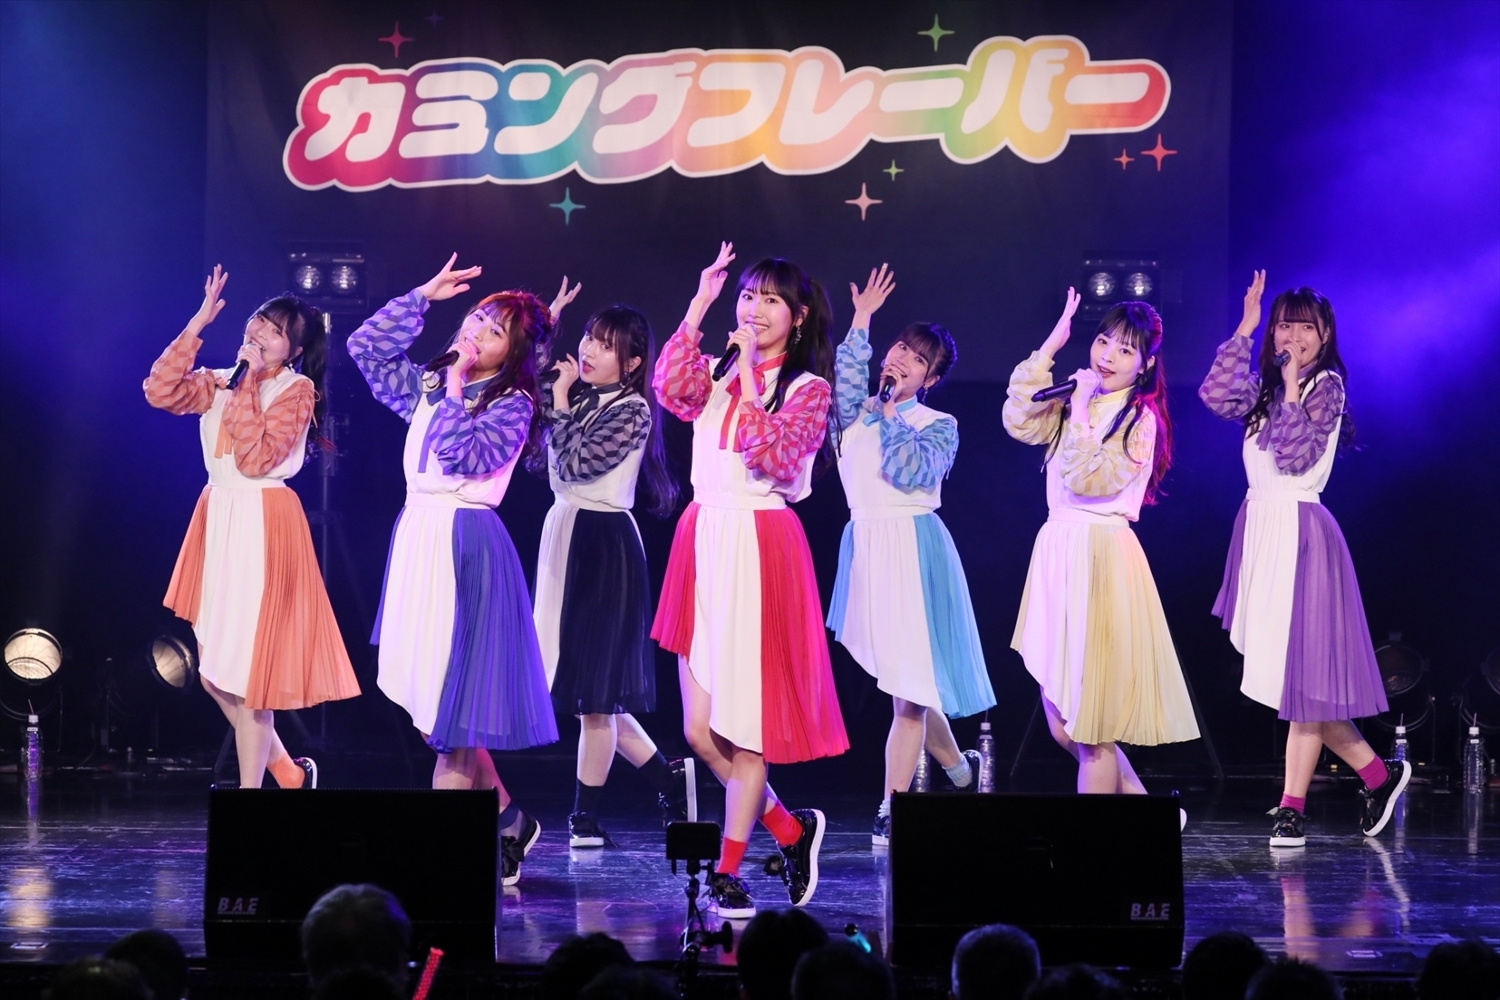 前列左からHINANO(青)、MIYO(赤) 後列左からENA(橙)、KIMIE(黒)、MIZUKI(水色)、YU-KI(黄)、AIRI(紫)